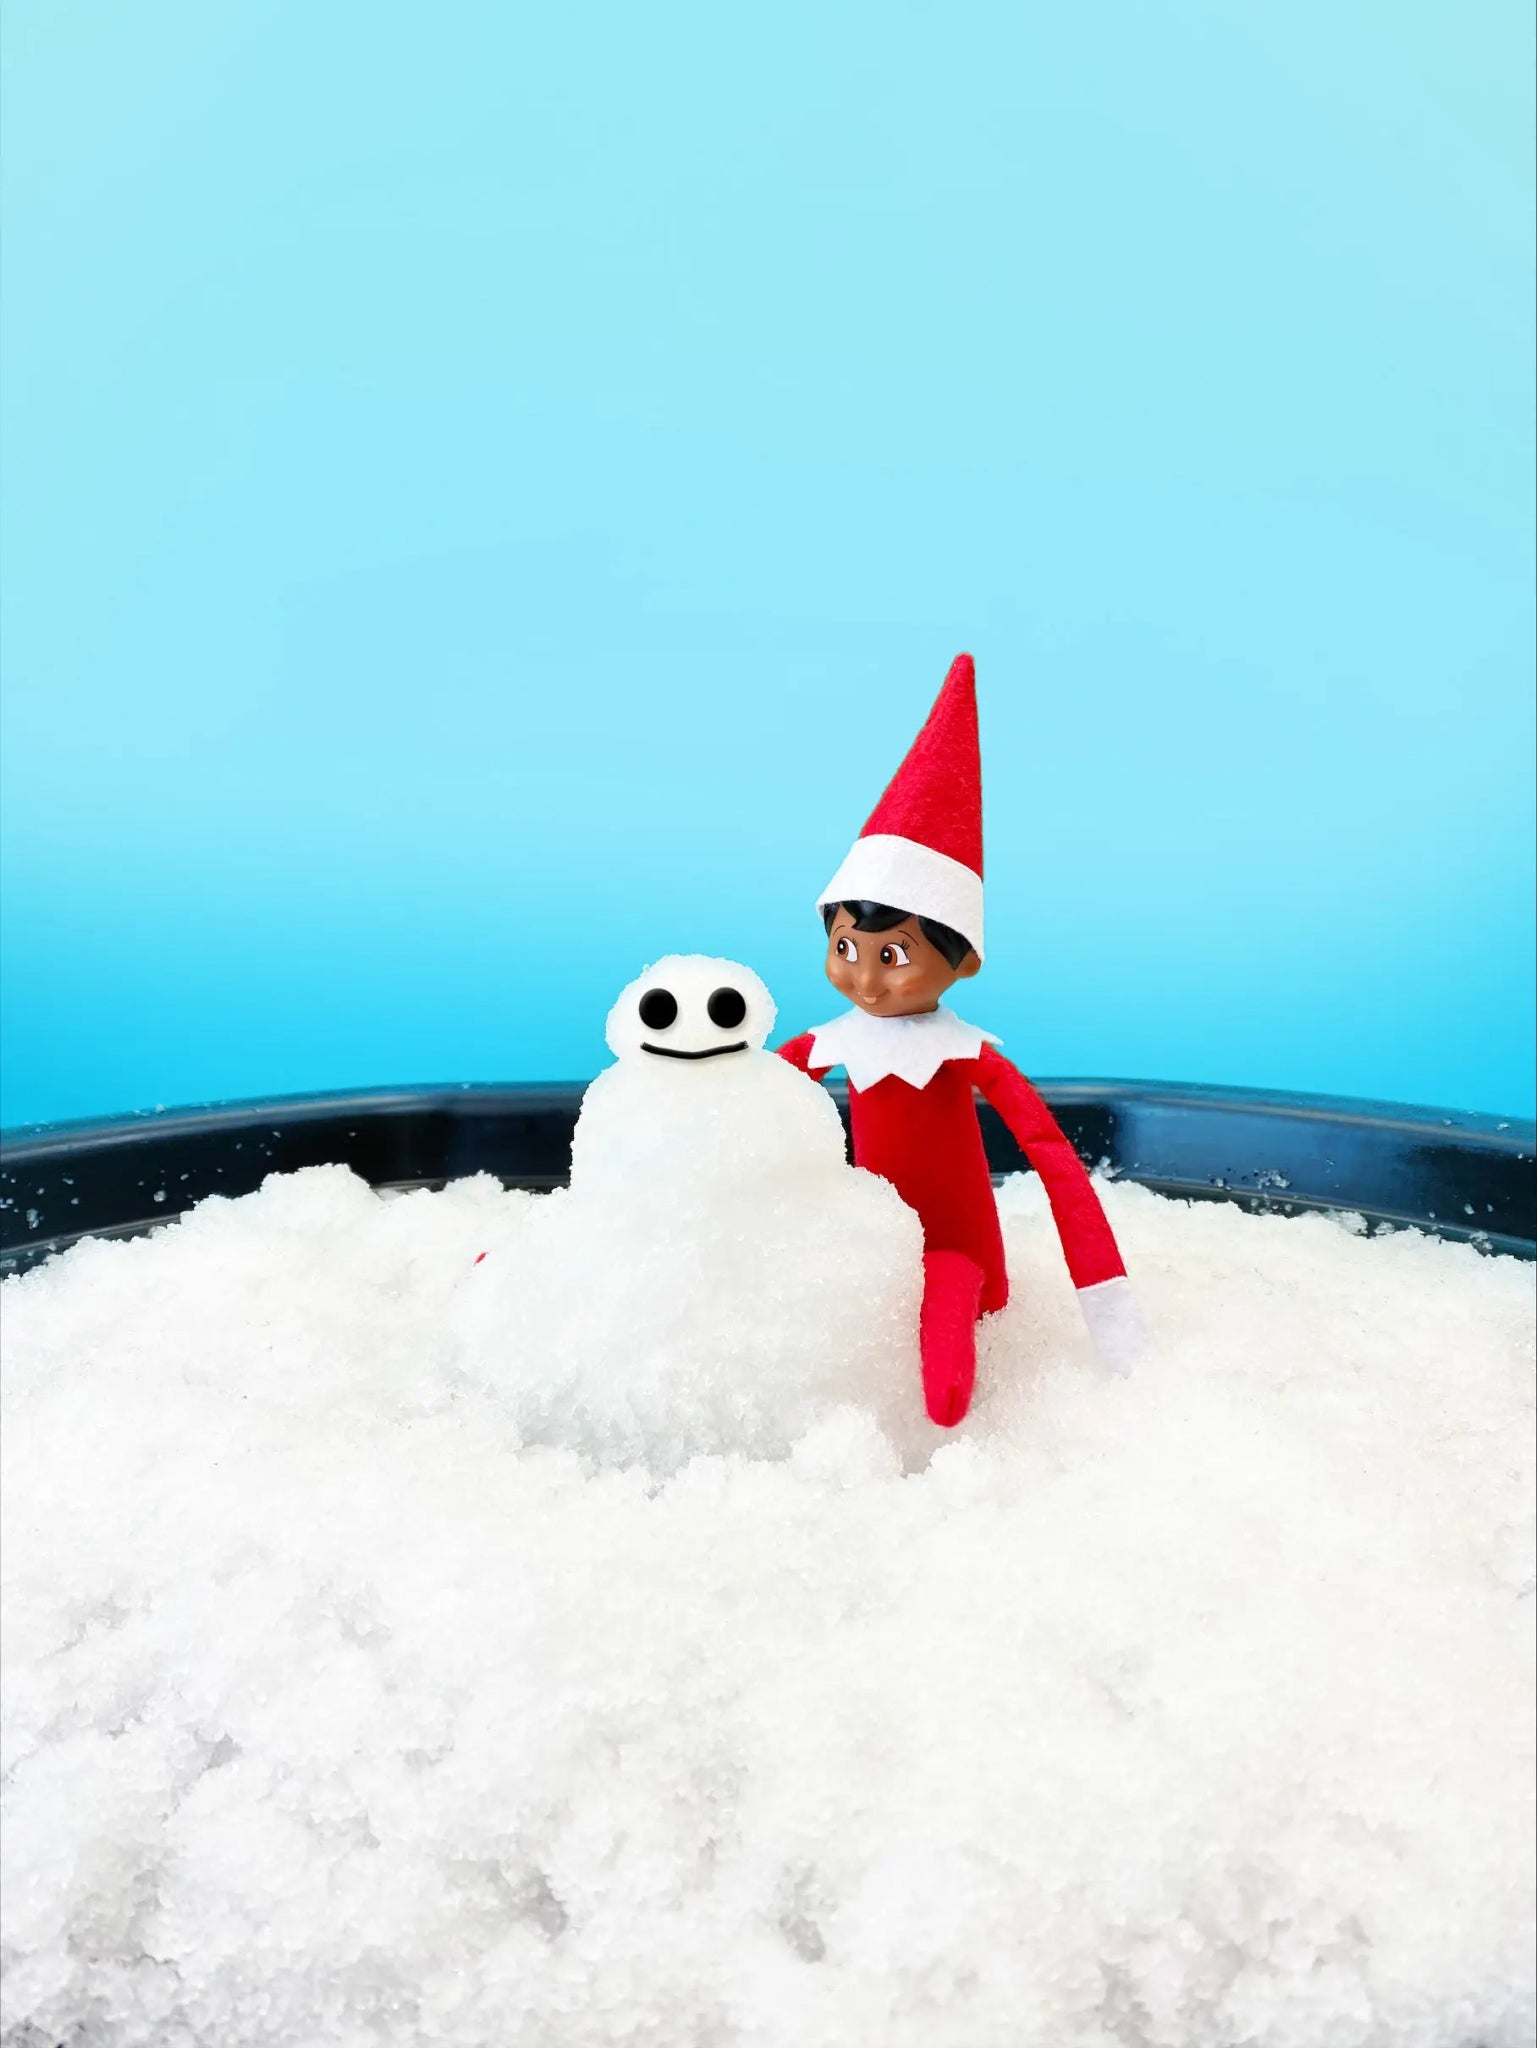 Zimpli Kids - Elf on the Shelf Sensorische Sneeuwspel - 2 in 1 Scout Elf - Playlaan